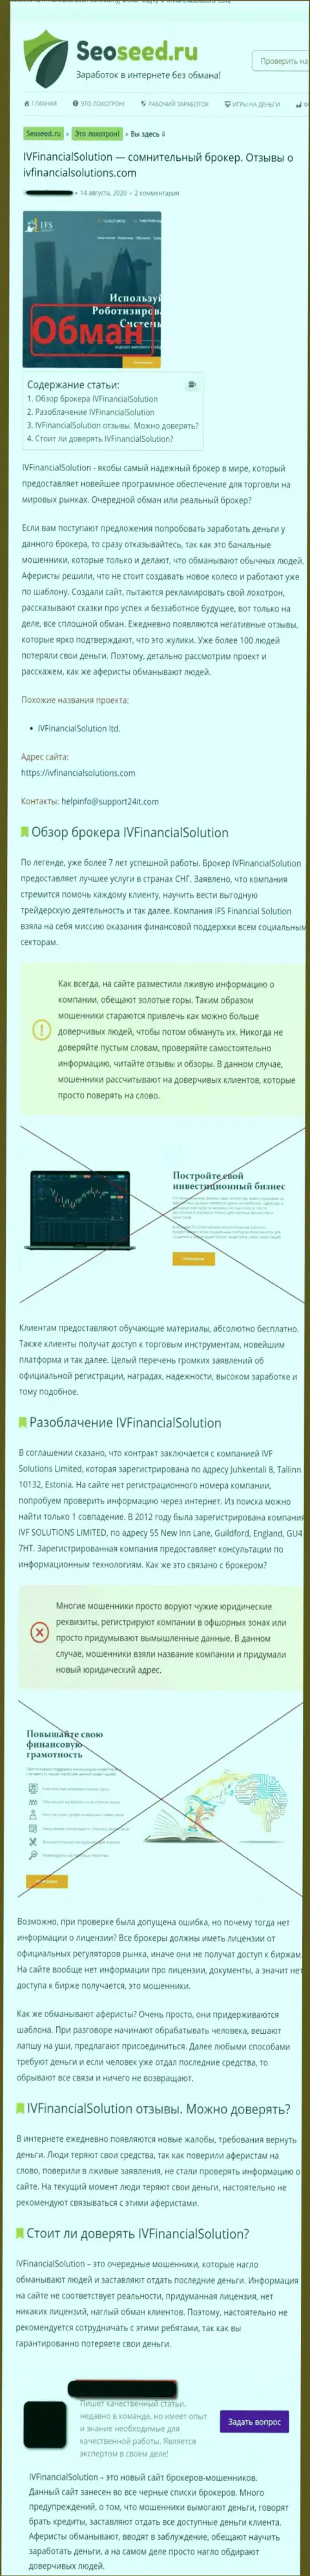 IV Financial Solutions ЛОХОТРОНЯТ ! Факты незаконных уловок